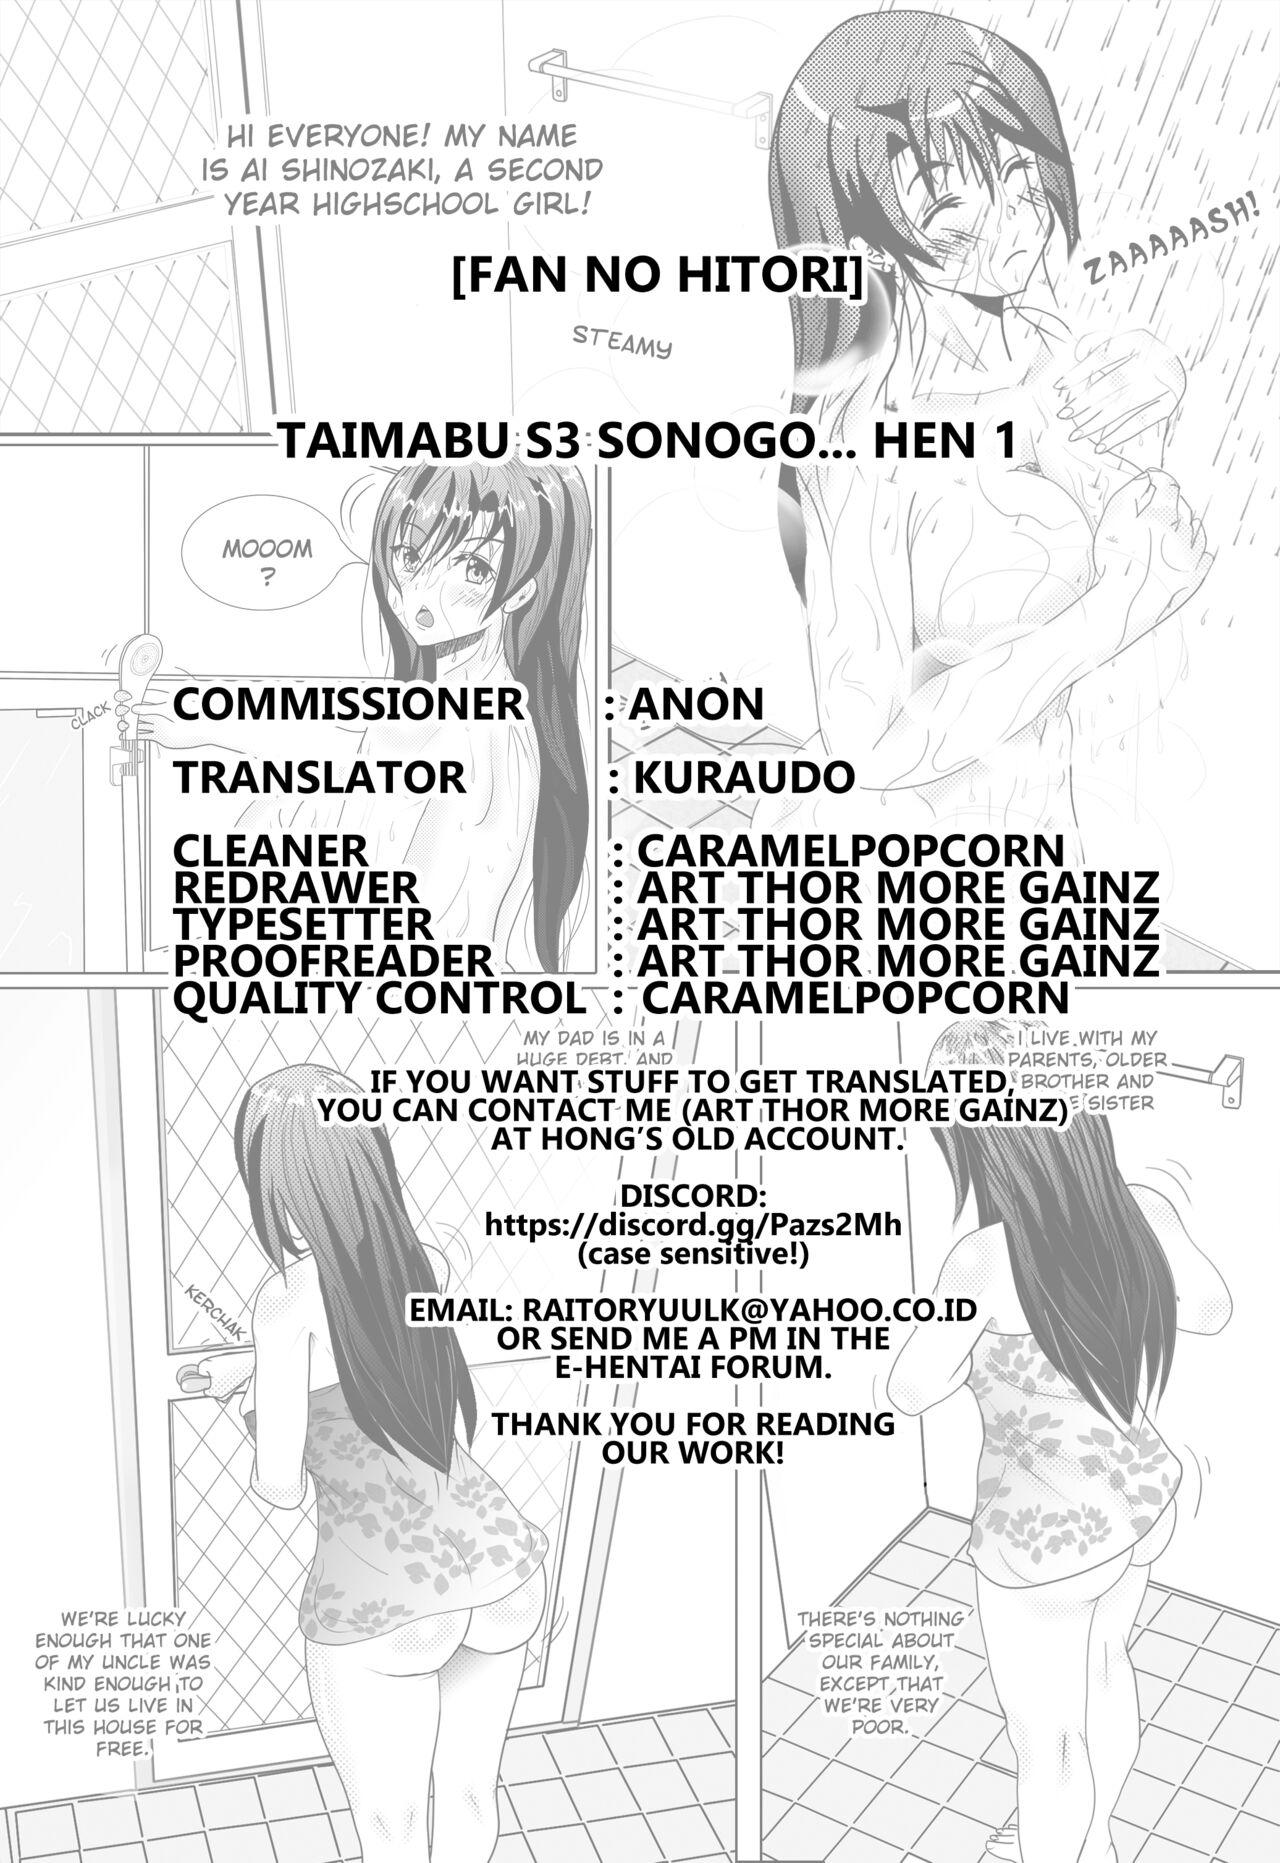 Taimabu S3 Sonogo... Hen 1 | Taimabu Season 3 Thereafter... Chapter 1 11